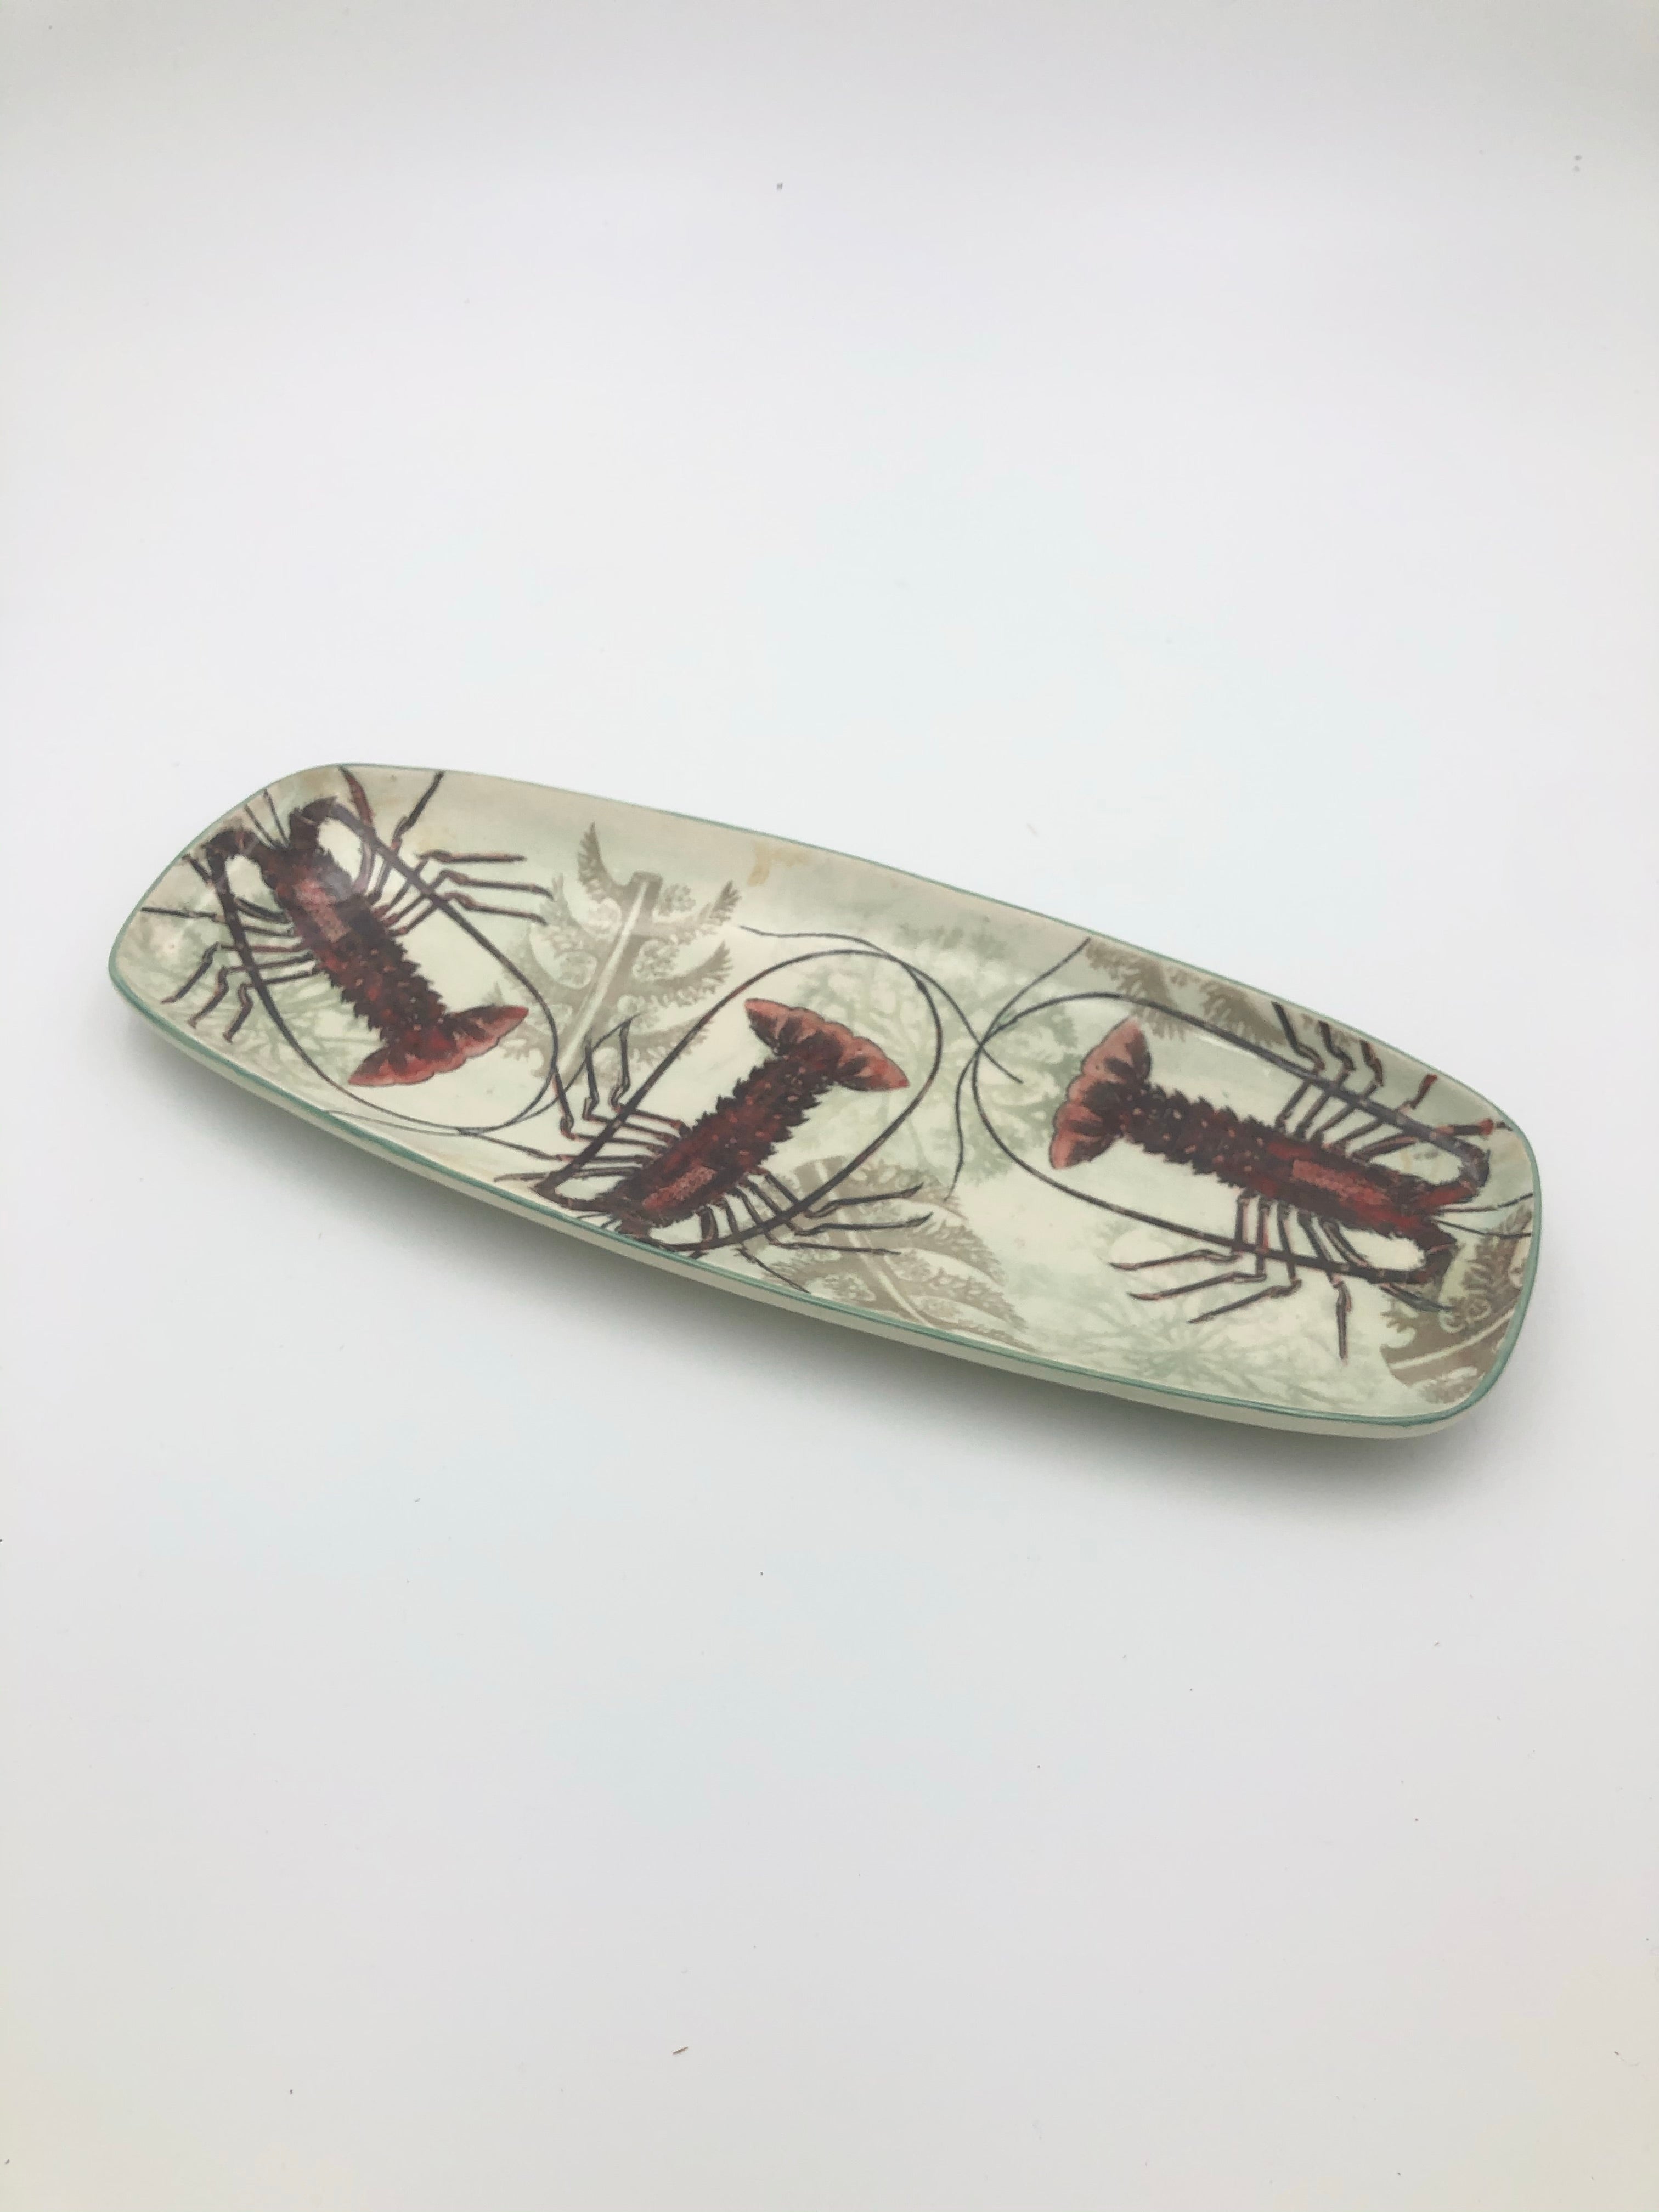 Crayfish Dish by Craig Crawford